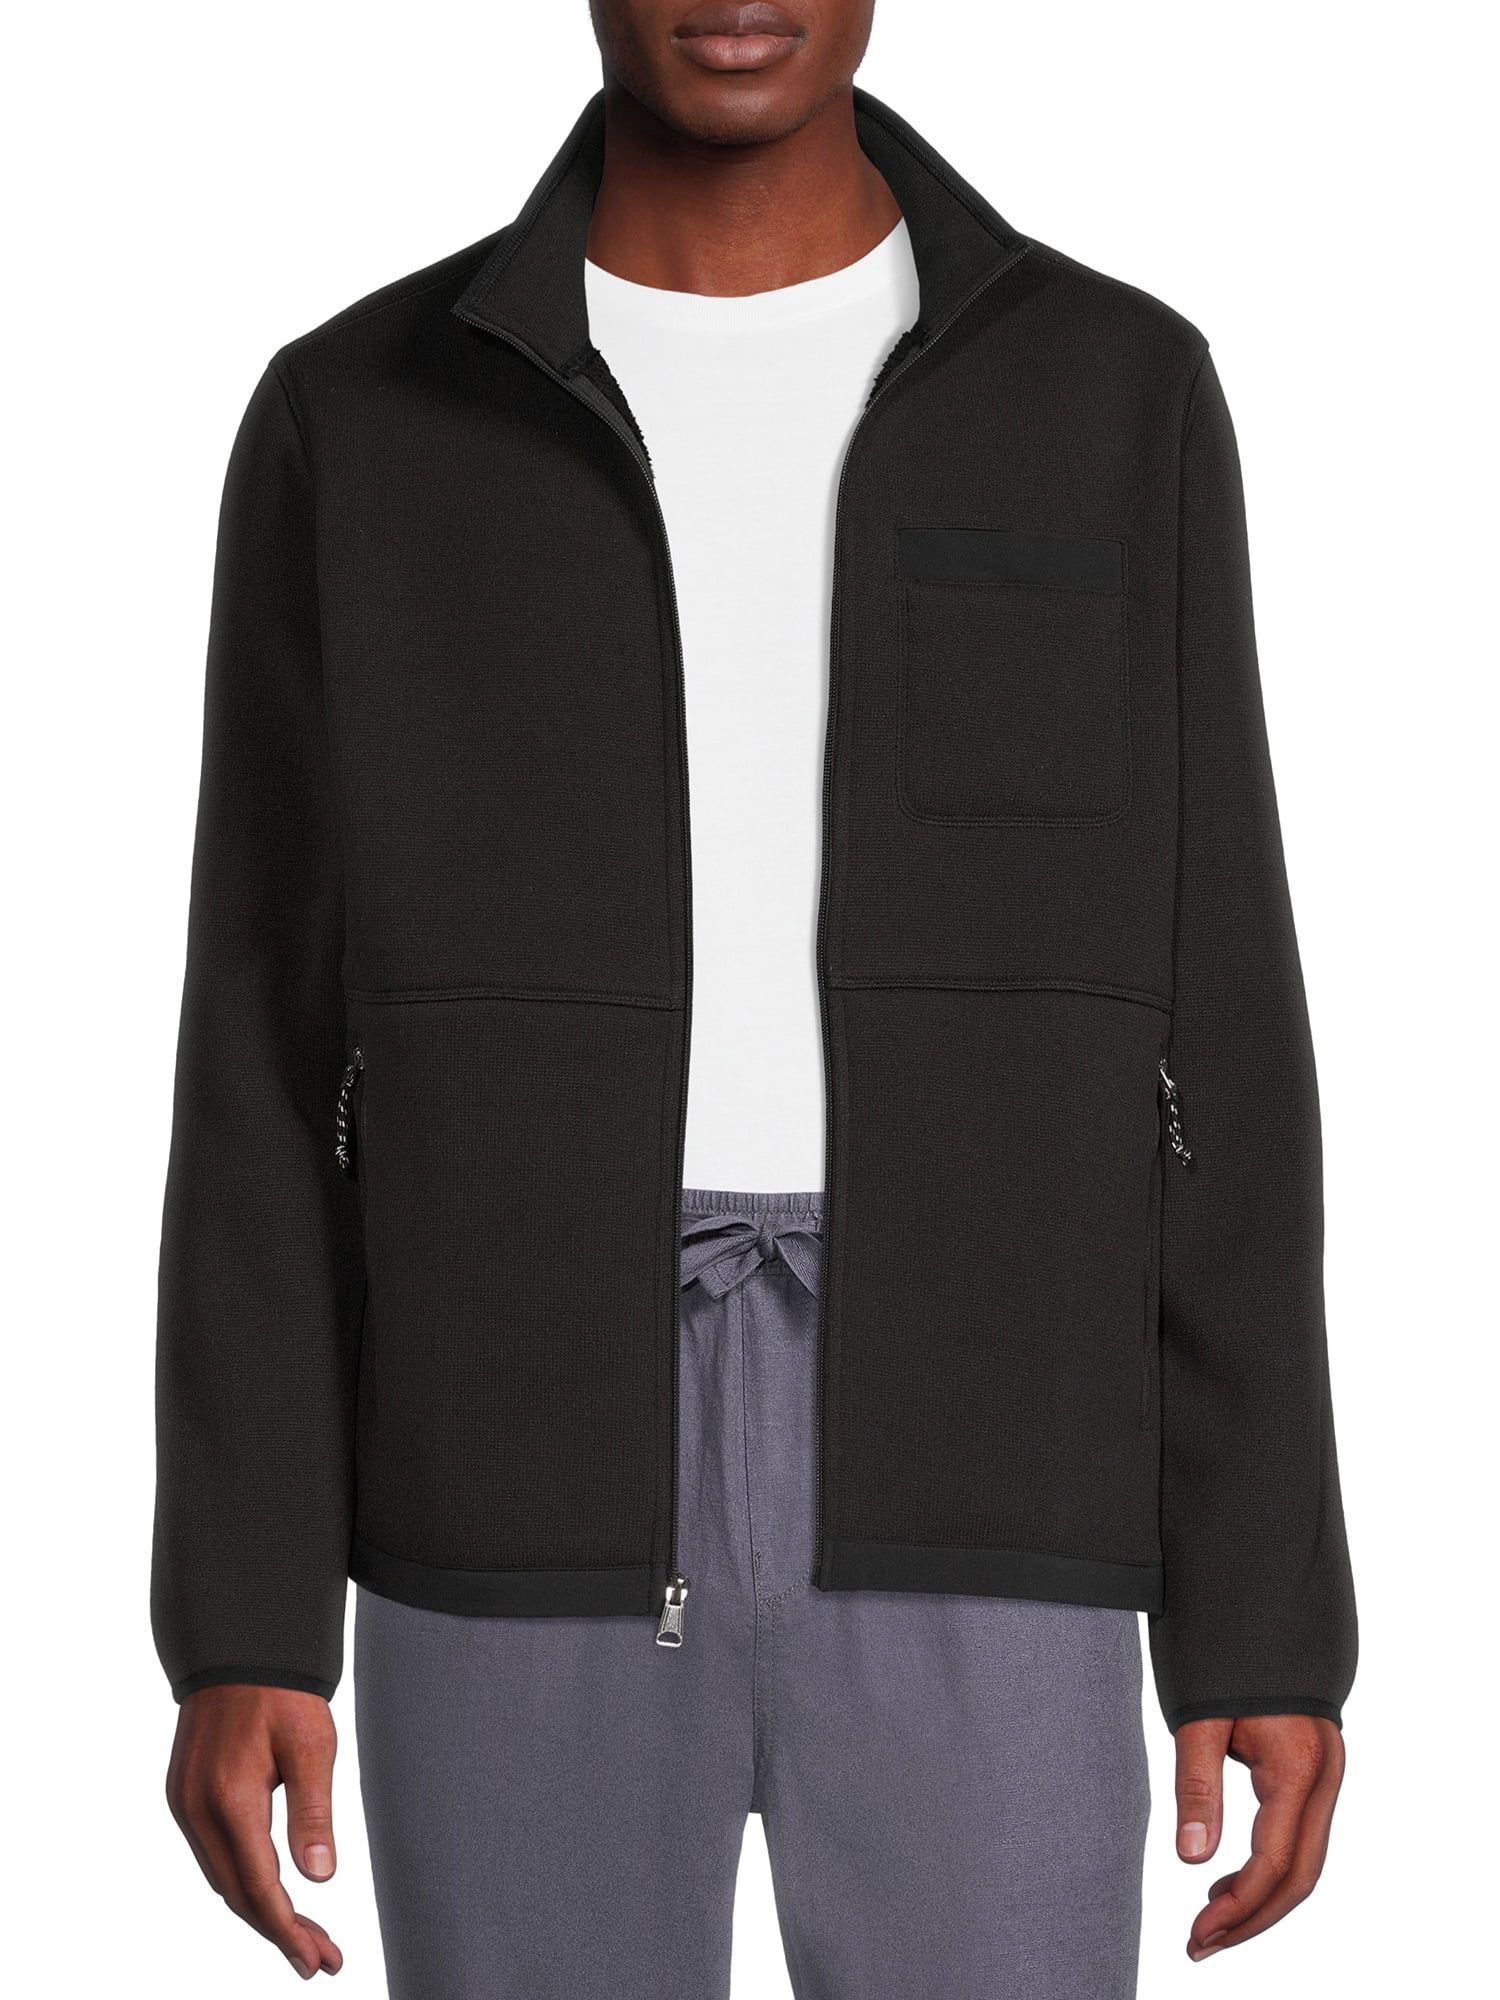 George Men's and Big Men's Sweater Fleece Jacket, up to Size 5XL - Walmart.com | Walmart (US)